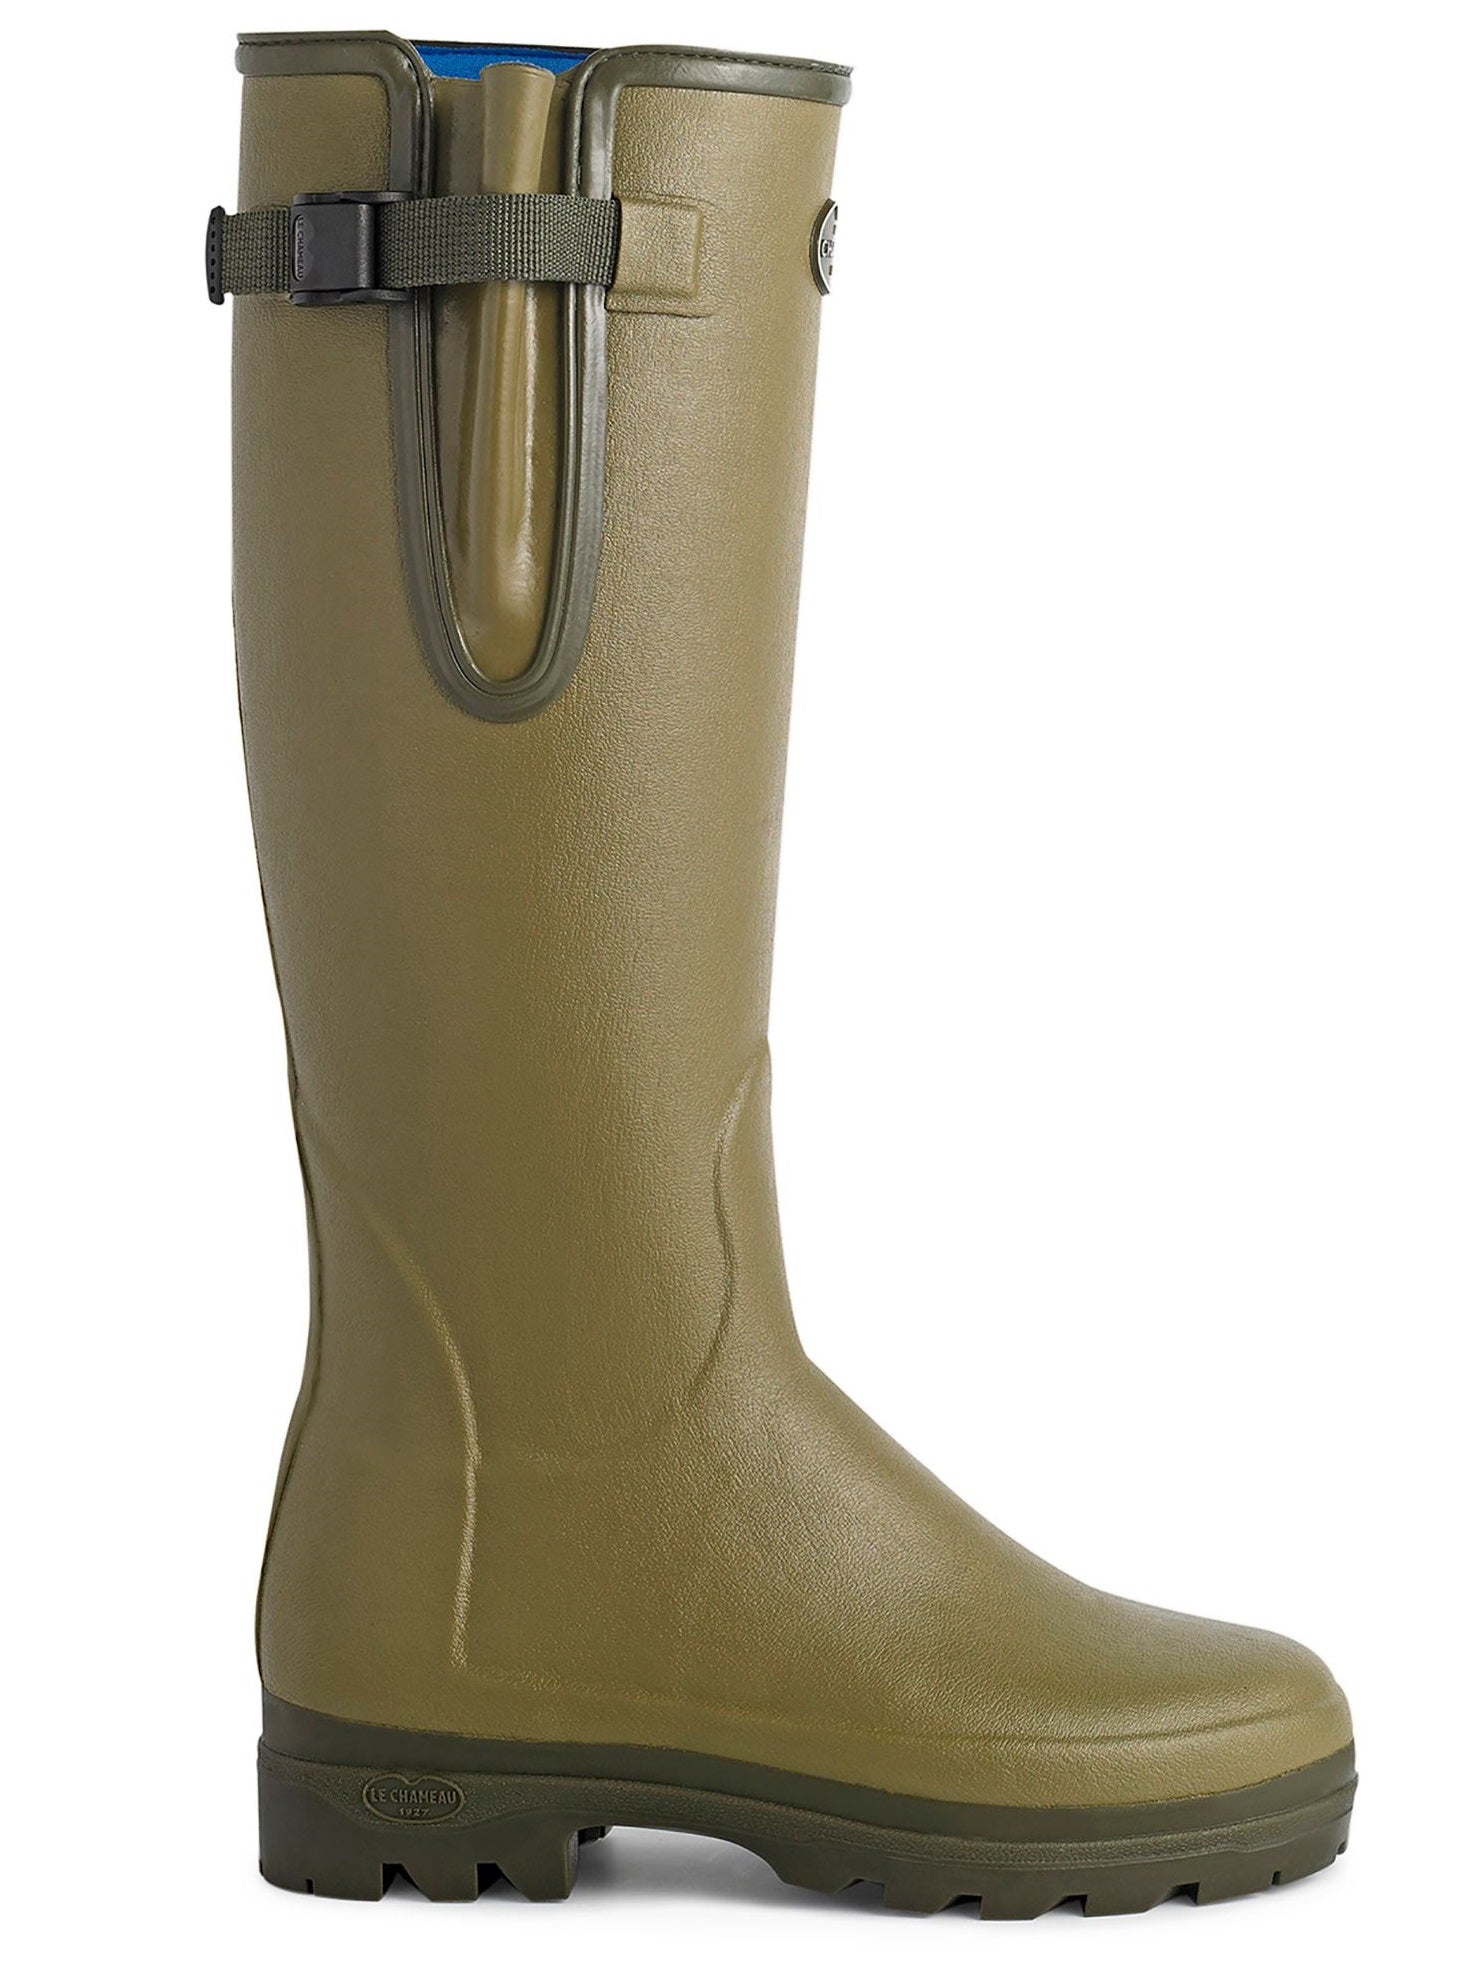 LE CHAMEAU Vierzonord Boots - Ladies Neoprene Lined - Vert Vierzon